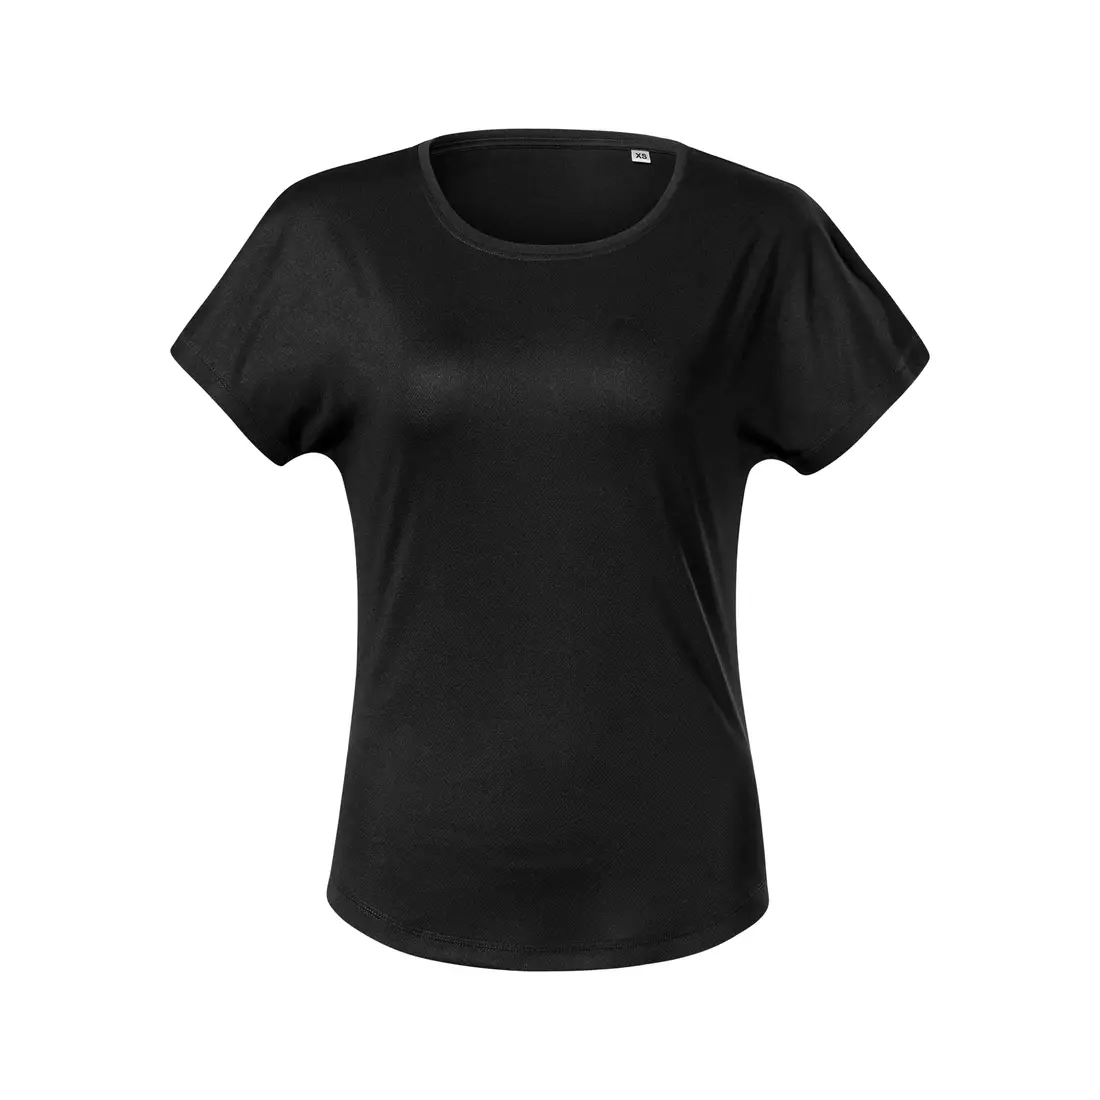 MALFINI CHANCE GRS Tricou sport pentru femei, mânecă scurtă, poliester micro din materiale reciclate, negru 8110112